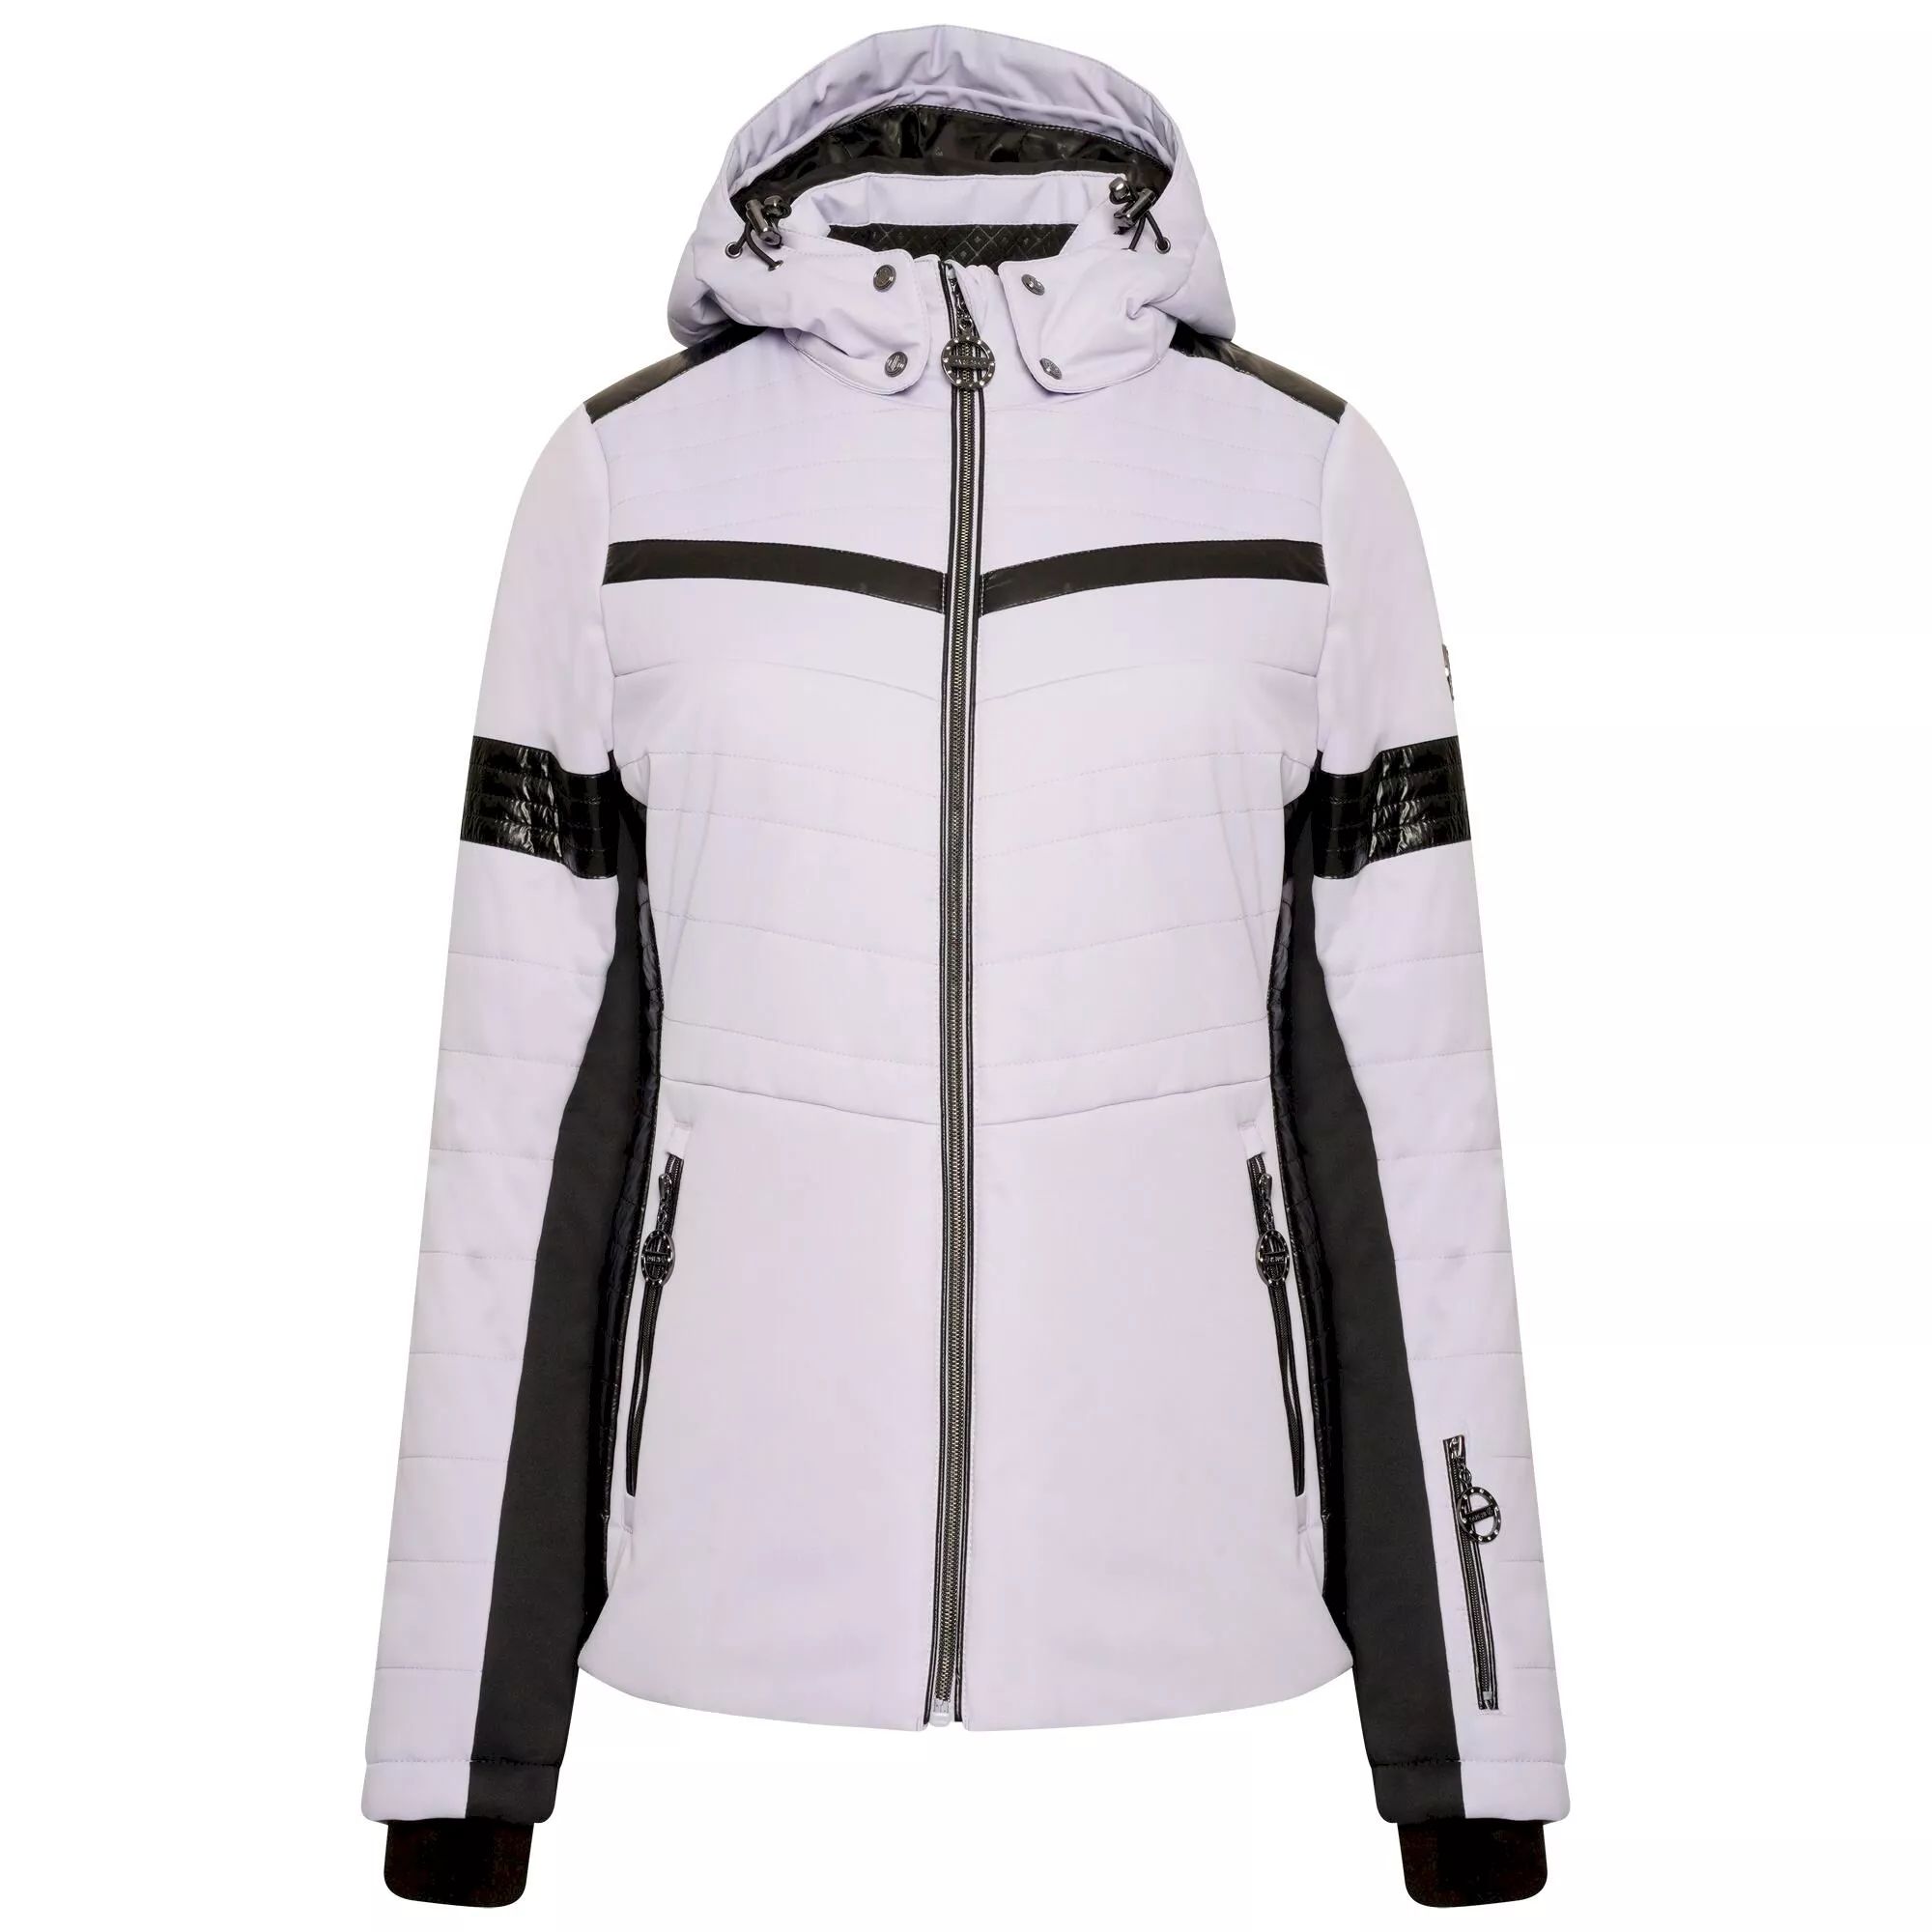 Niet genoeg levering aan huis adviseren Dare 2b Dynamical Luxe Quilted Ski Jacket | Snow gear